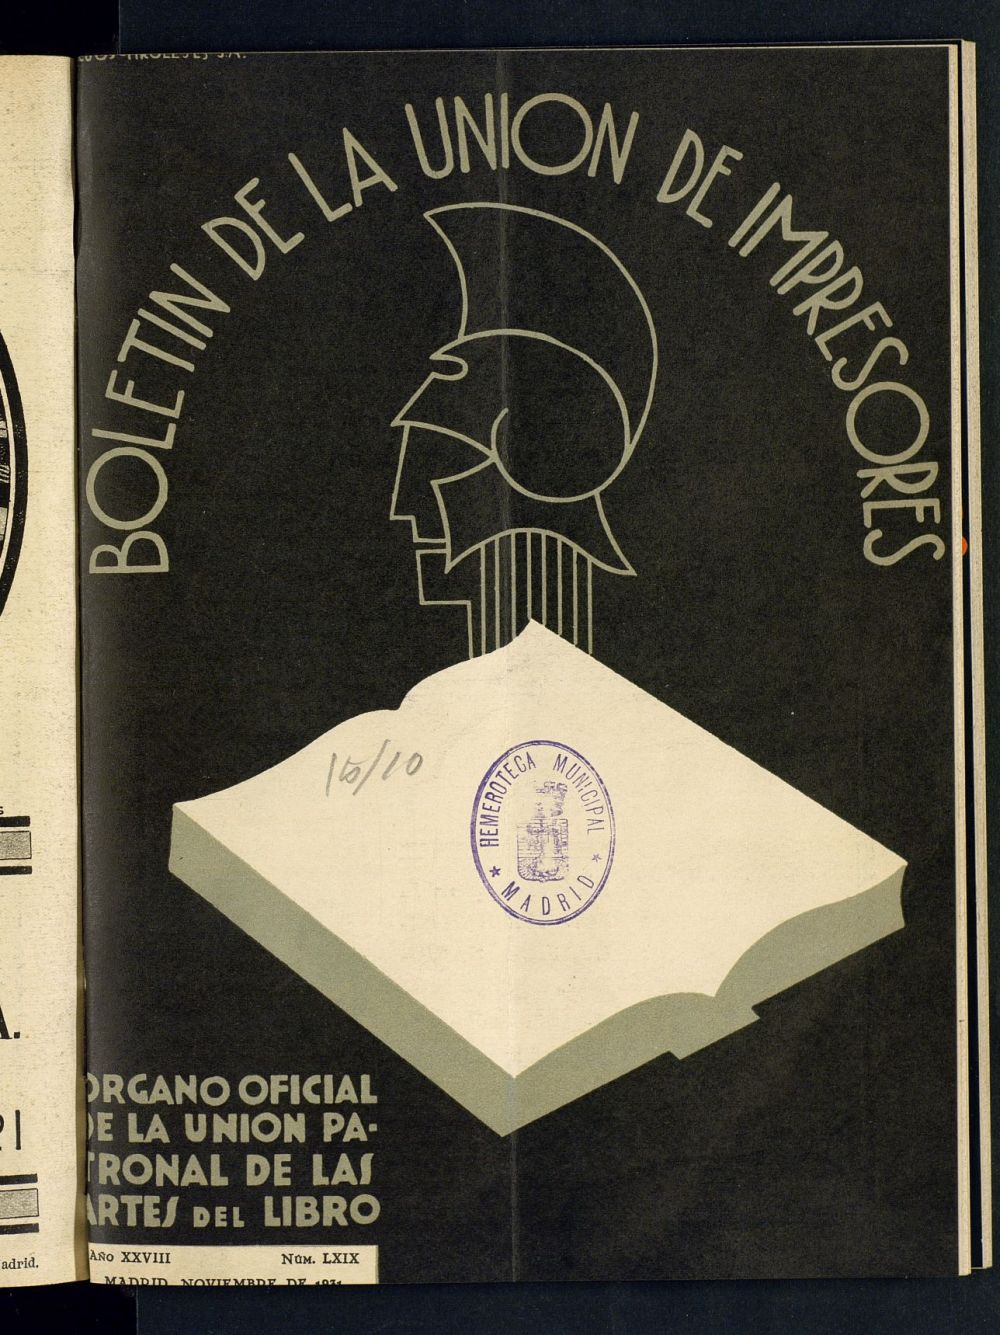 Boletn de la unin de impresores : rgano de la unin patronal de las artes del libro de noviembre de 1931